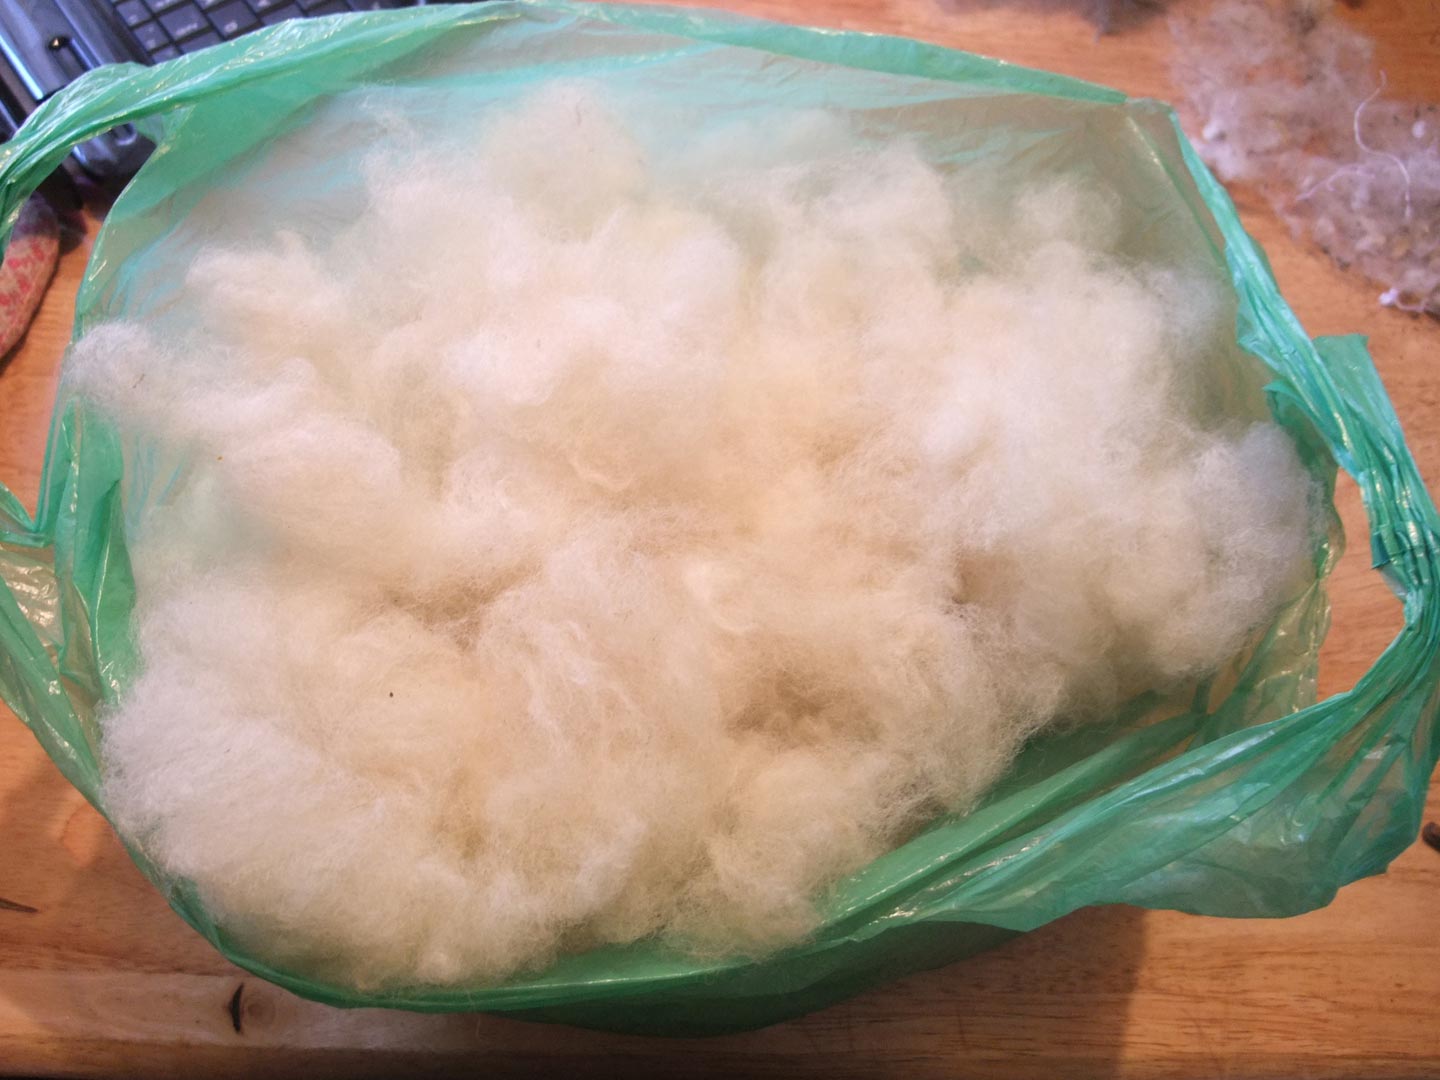 Wool all fluffy